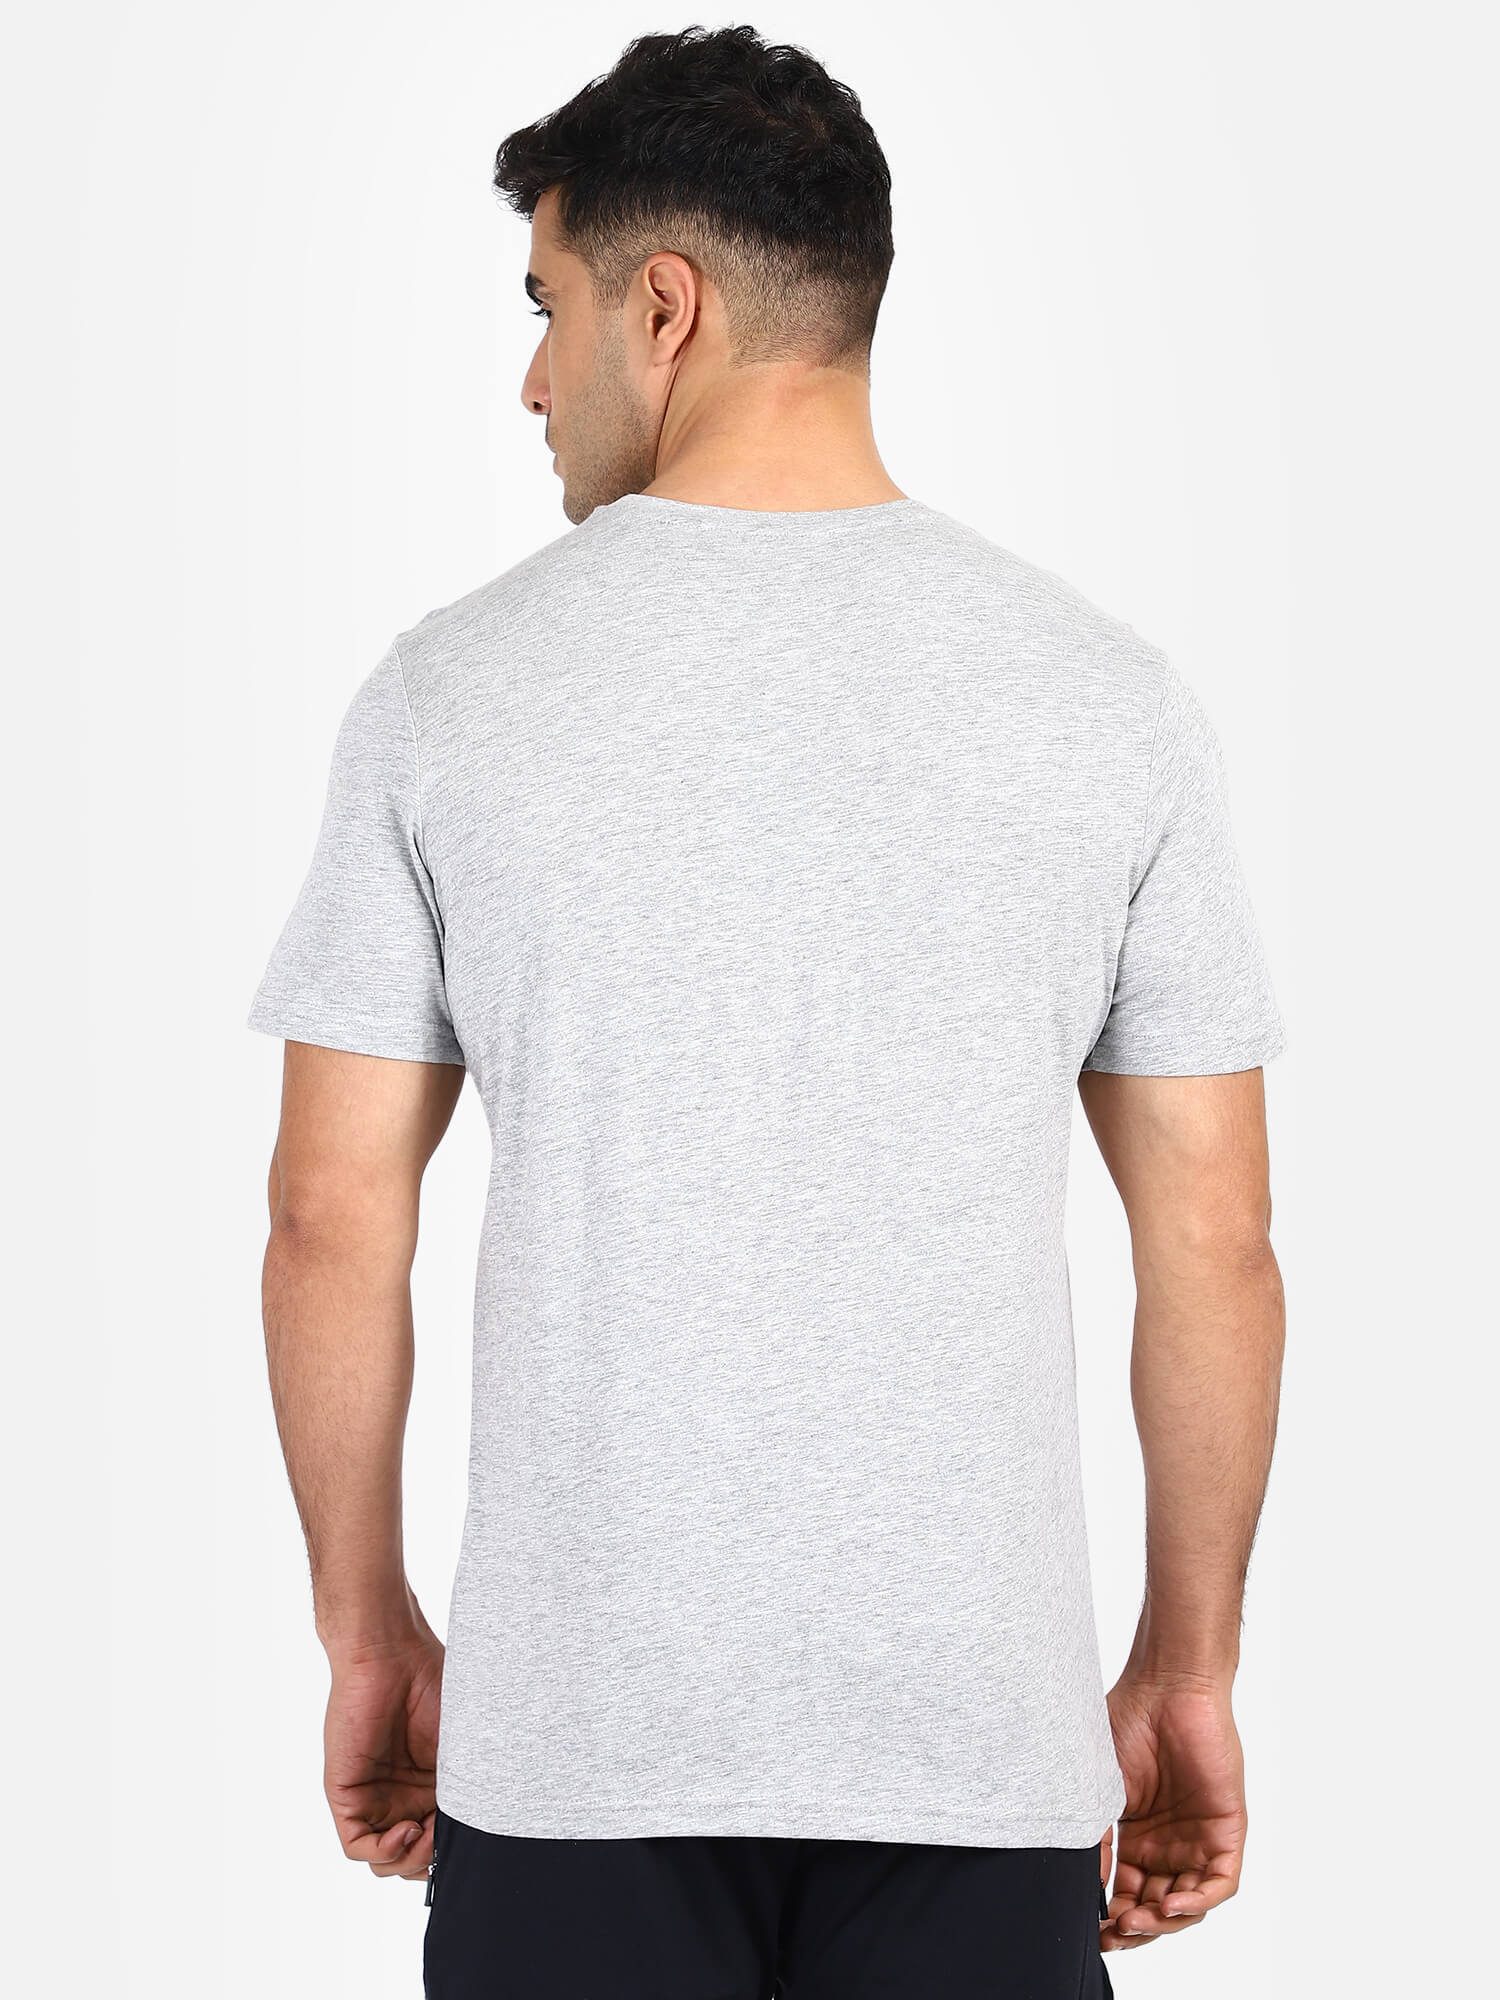 Ragnar Grey T-Shirts for Men